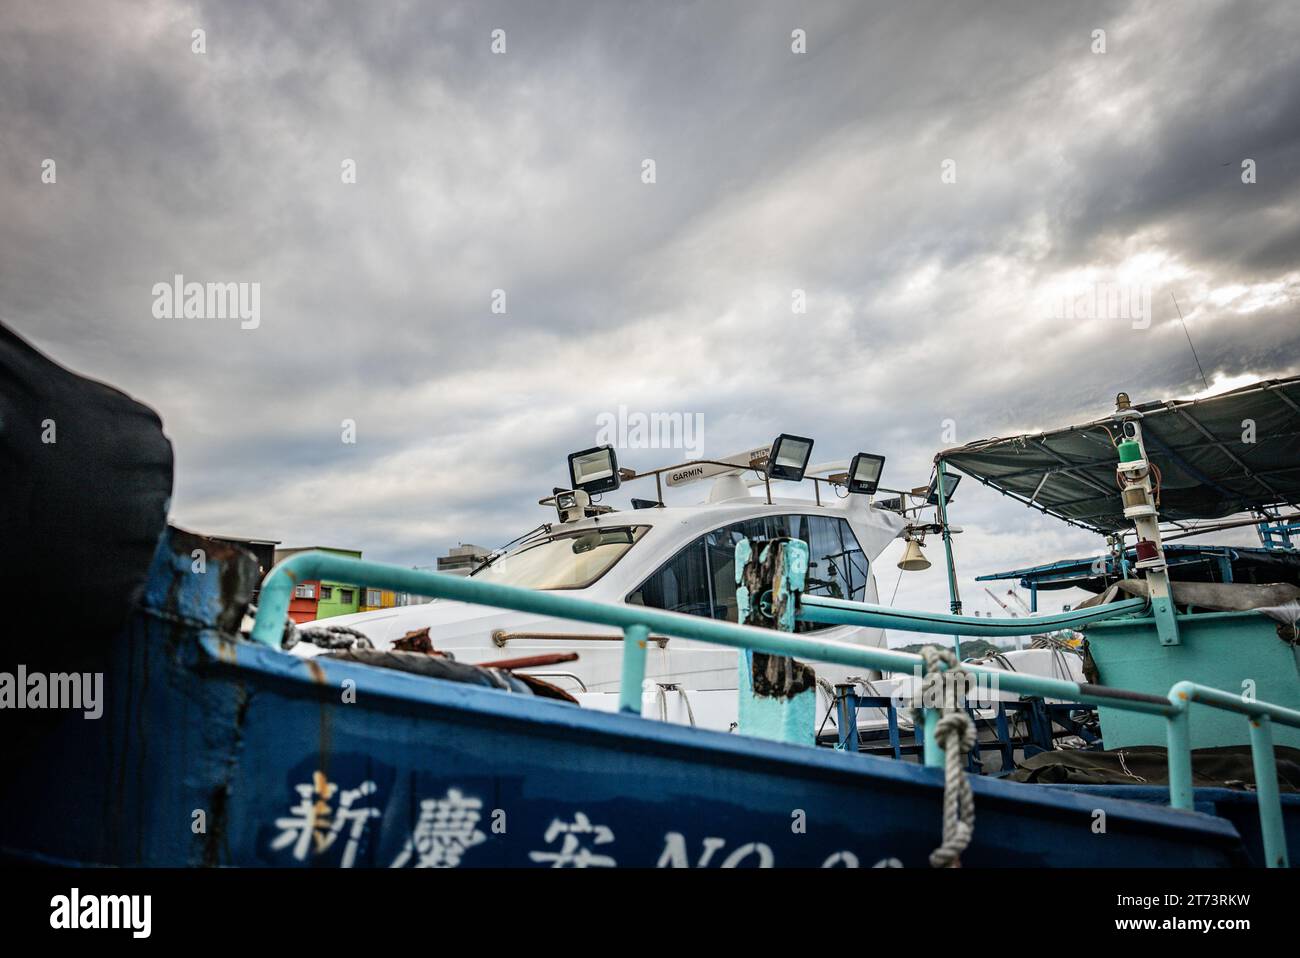 Boat in Colorful Zhengbin Fishing Port at Zhongzheng District, Keelung, Taiwan Stock Photo